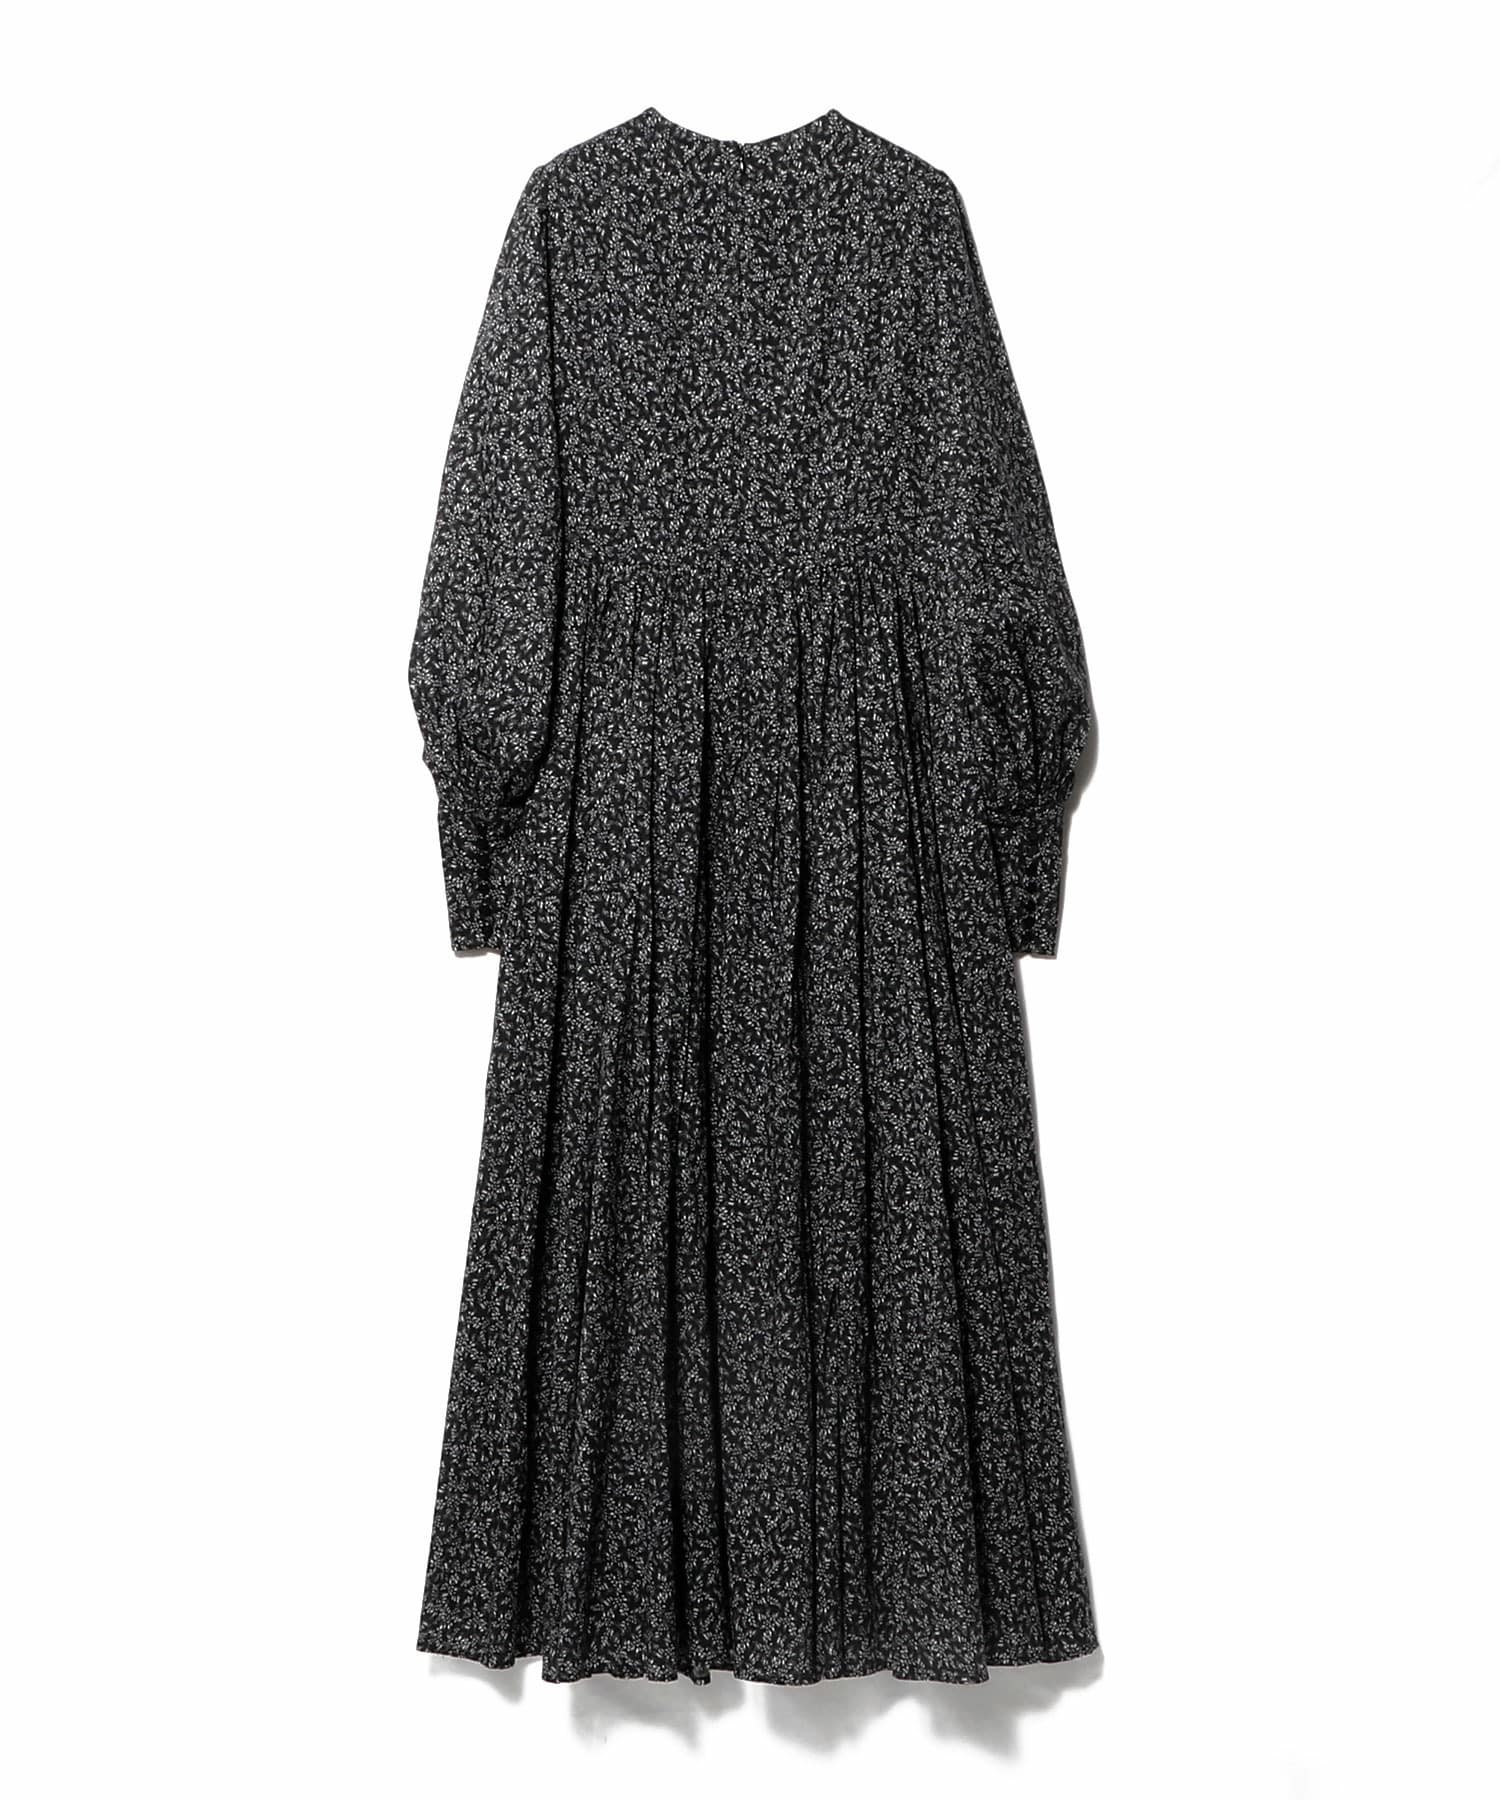 秋のレディのドレス 詳細画像 プリント系ブラック 5